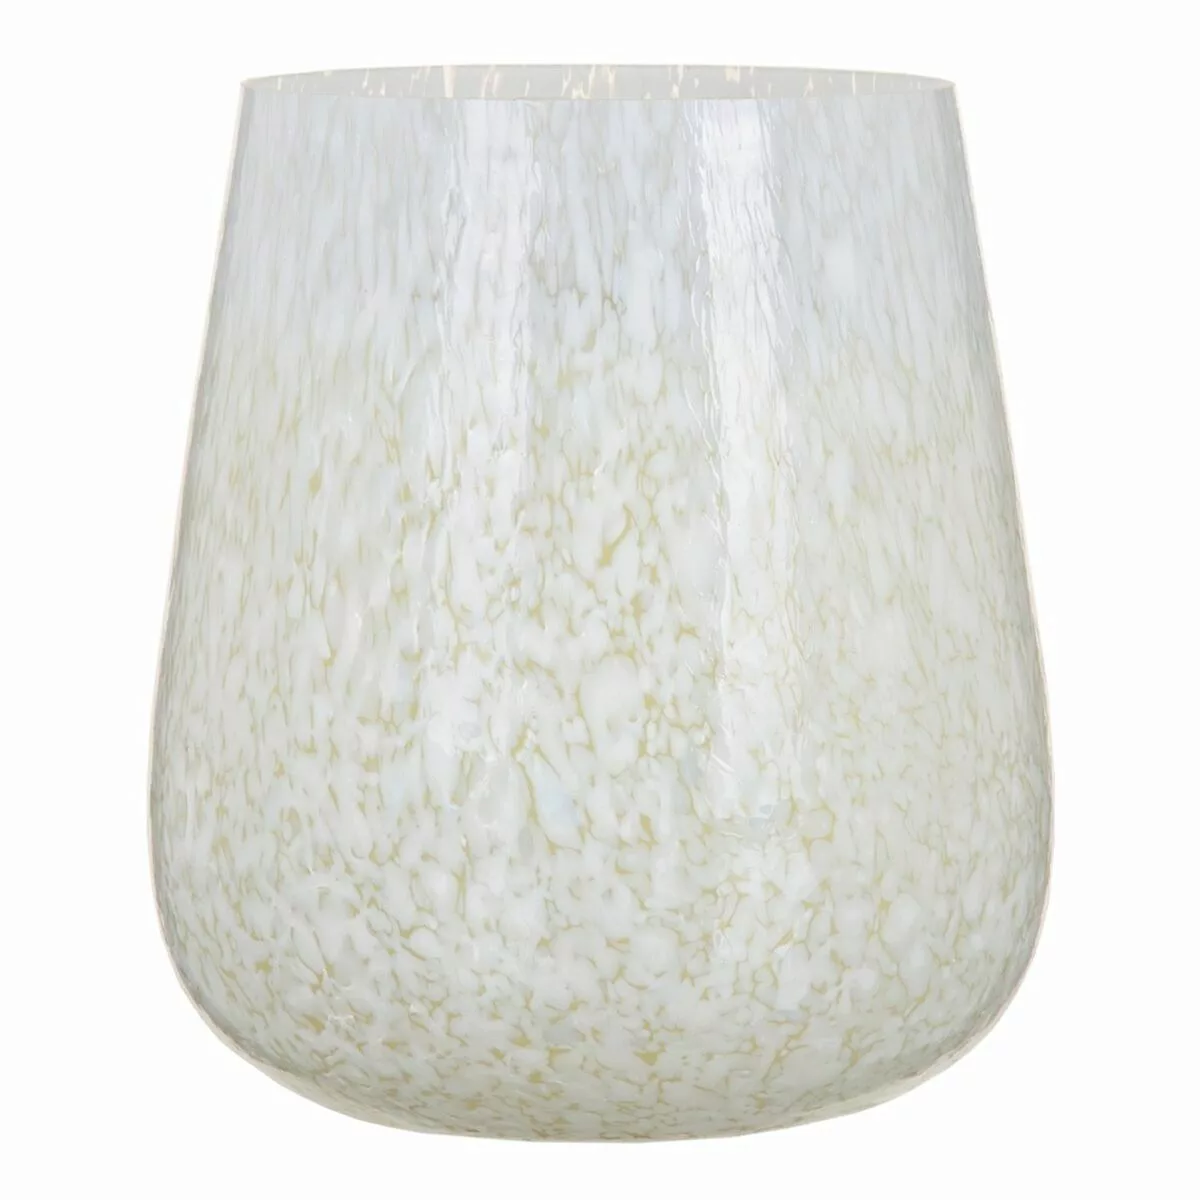 Kerzenschale Kristall Weiß 13 X 13 X 15 Cm günstig online kaufen